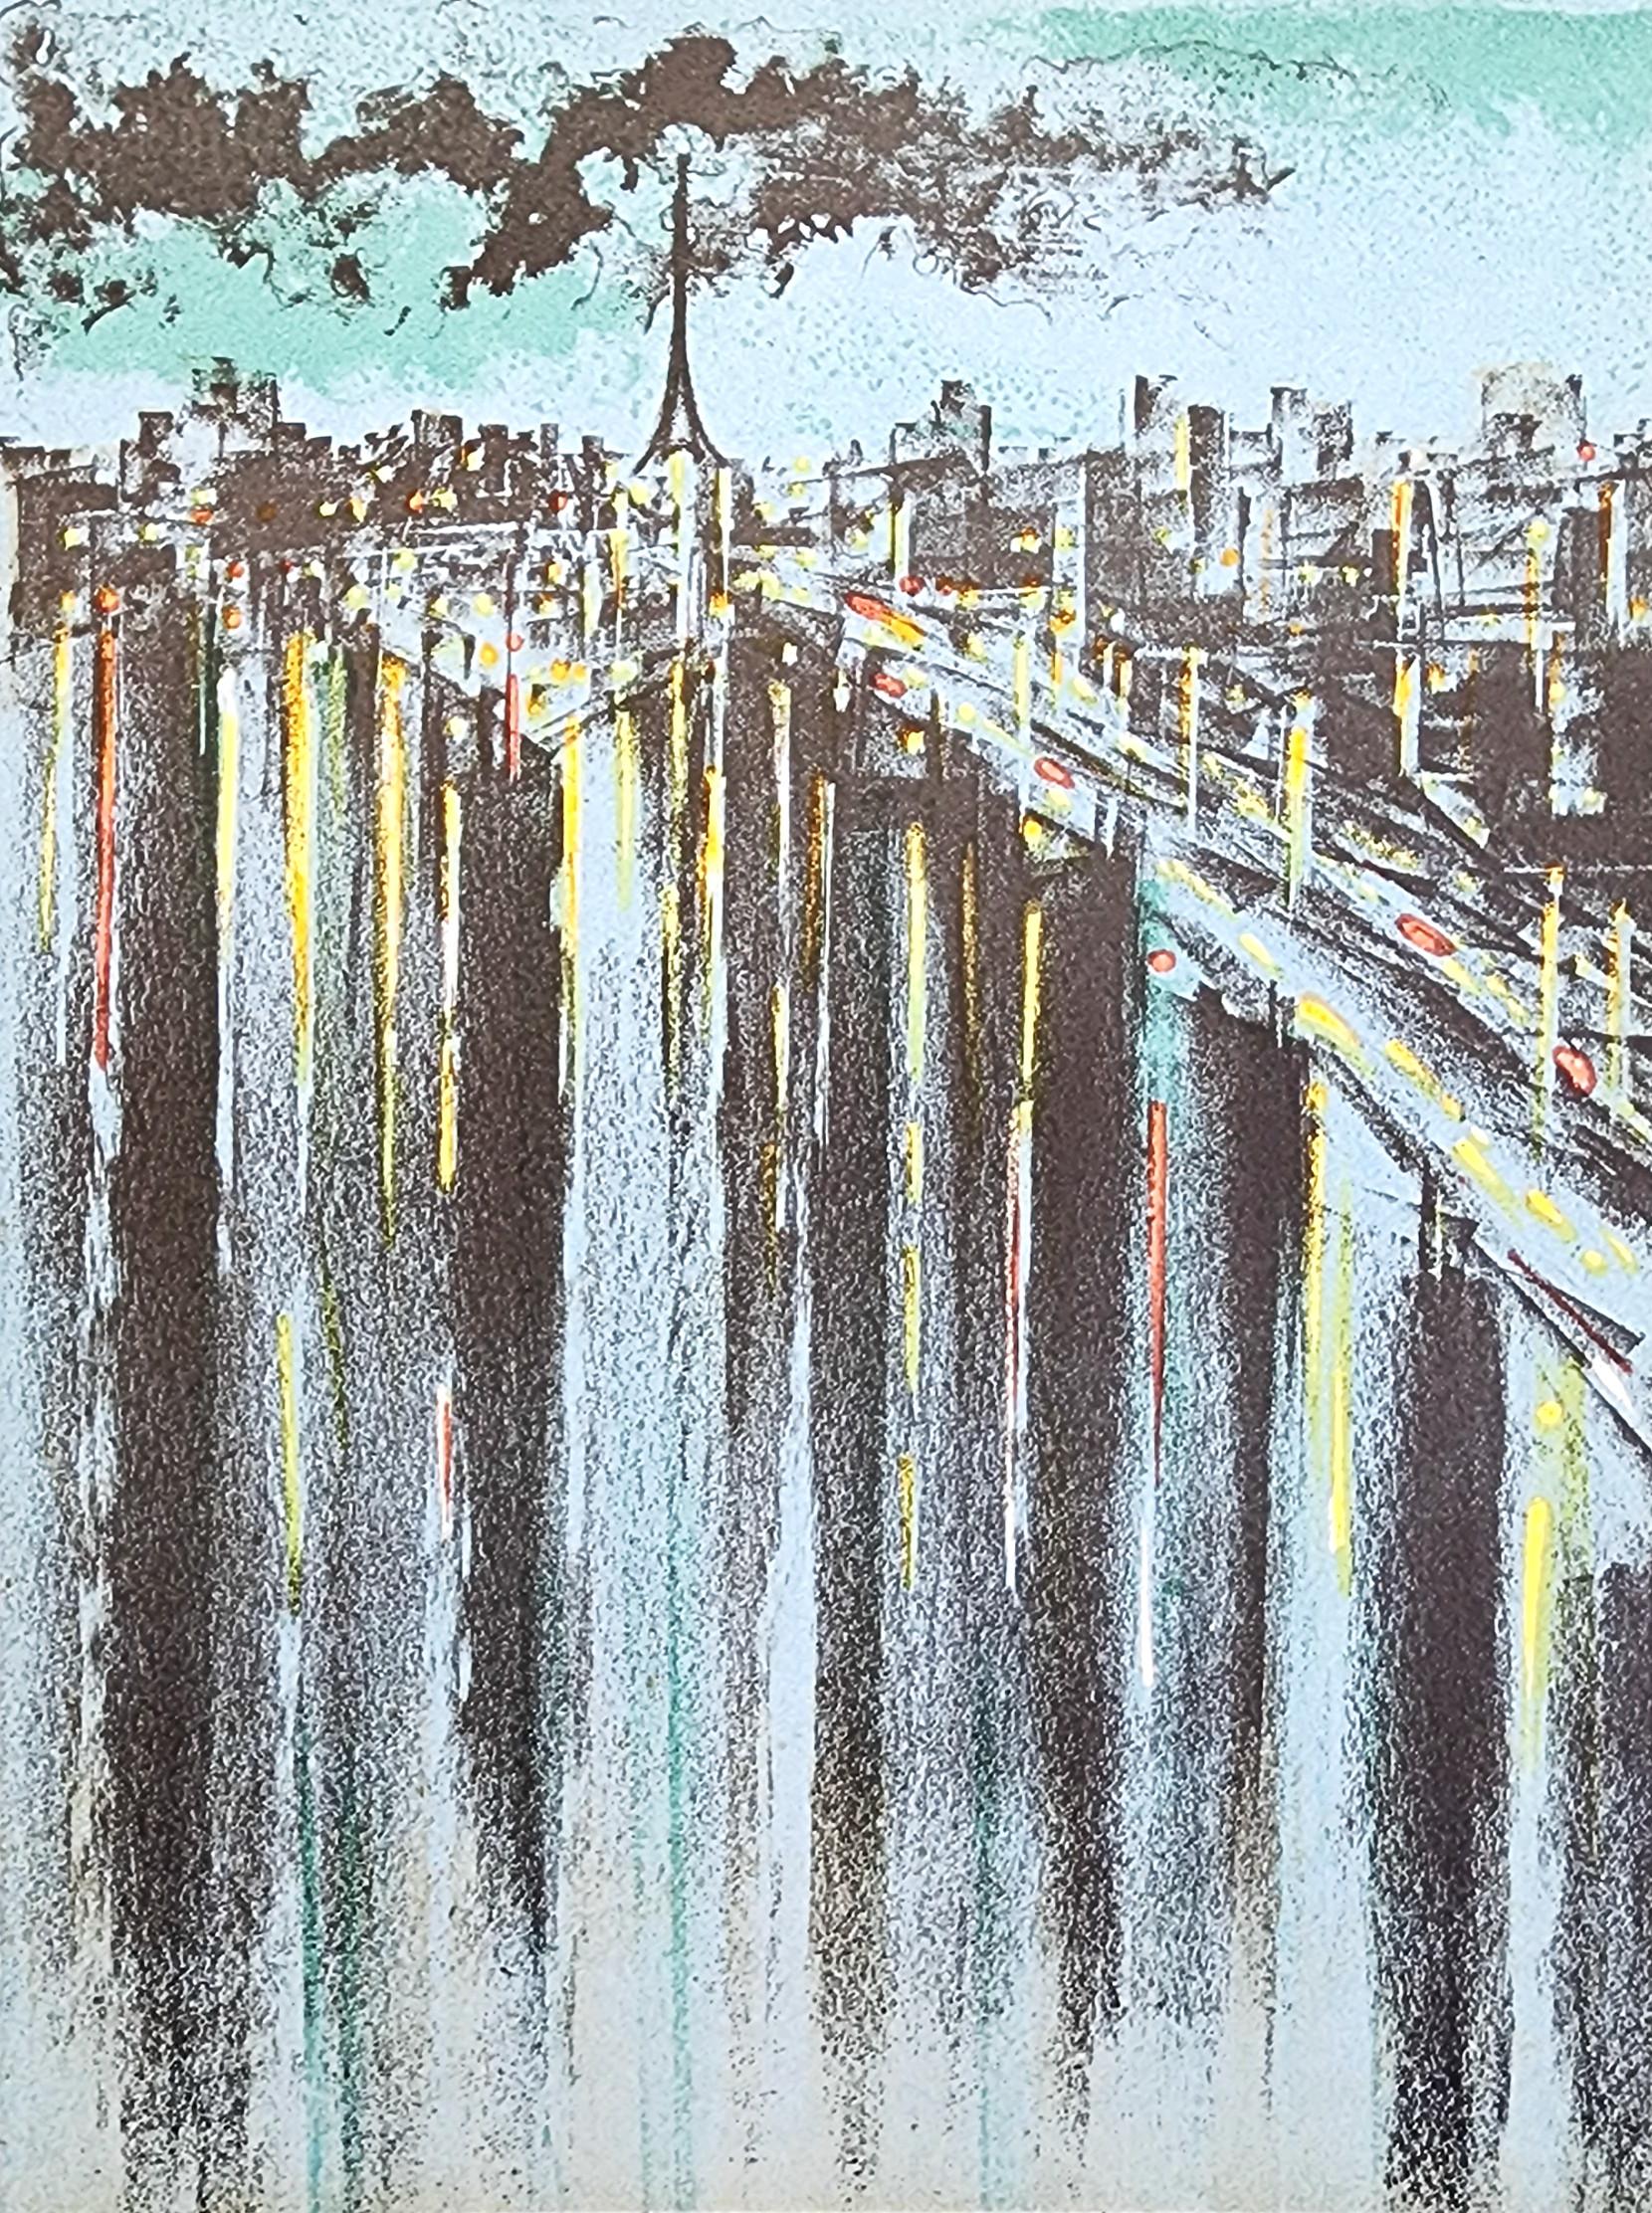 Landscape Print Richard Florsheim - La Seine à Paris (75% DE RÉDUCTION SUR LE PRIX DE LISTE POUR UNE DURÉE LIMITÉE, OPTIONS D'ENCADREMENT DISPONIBLES)